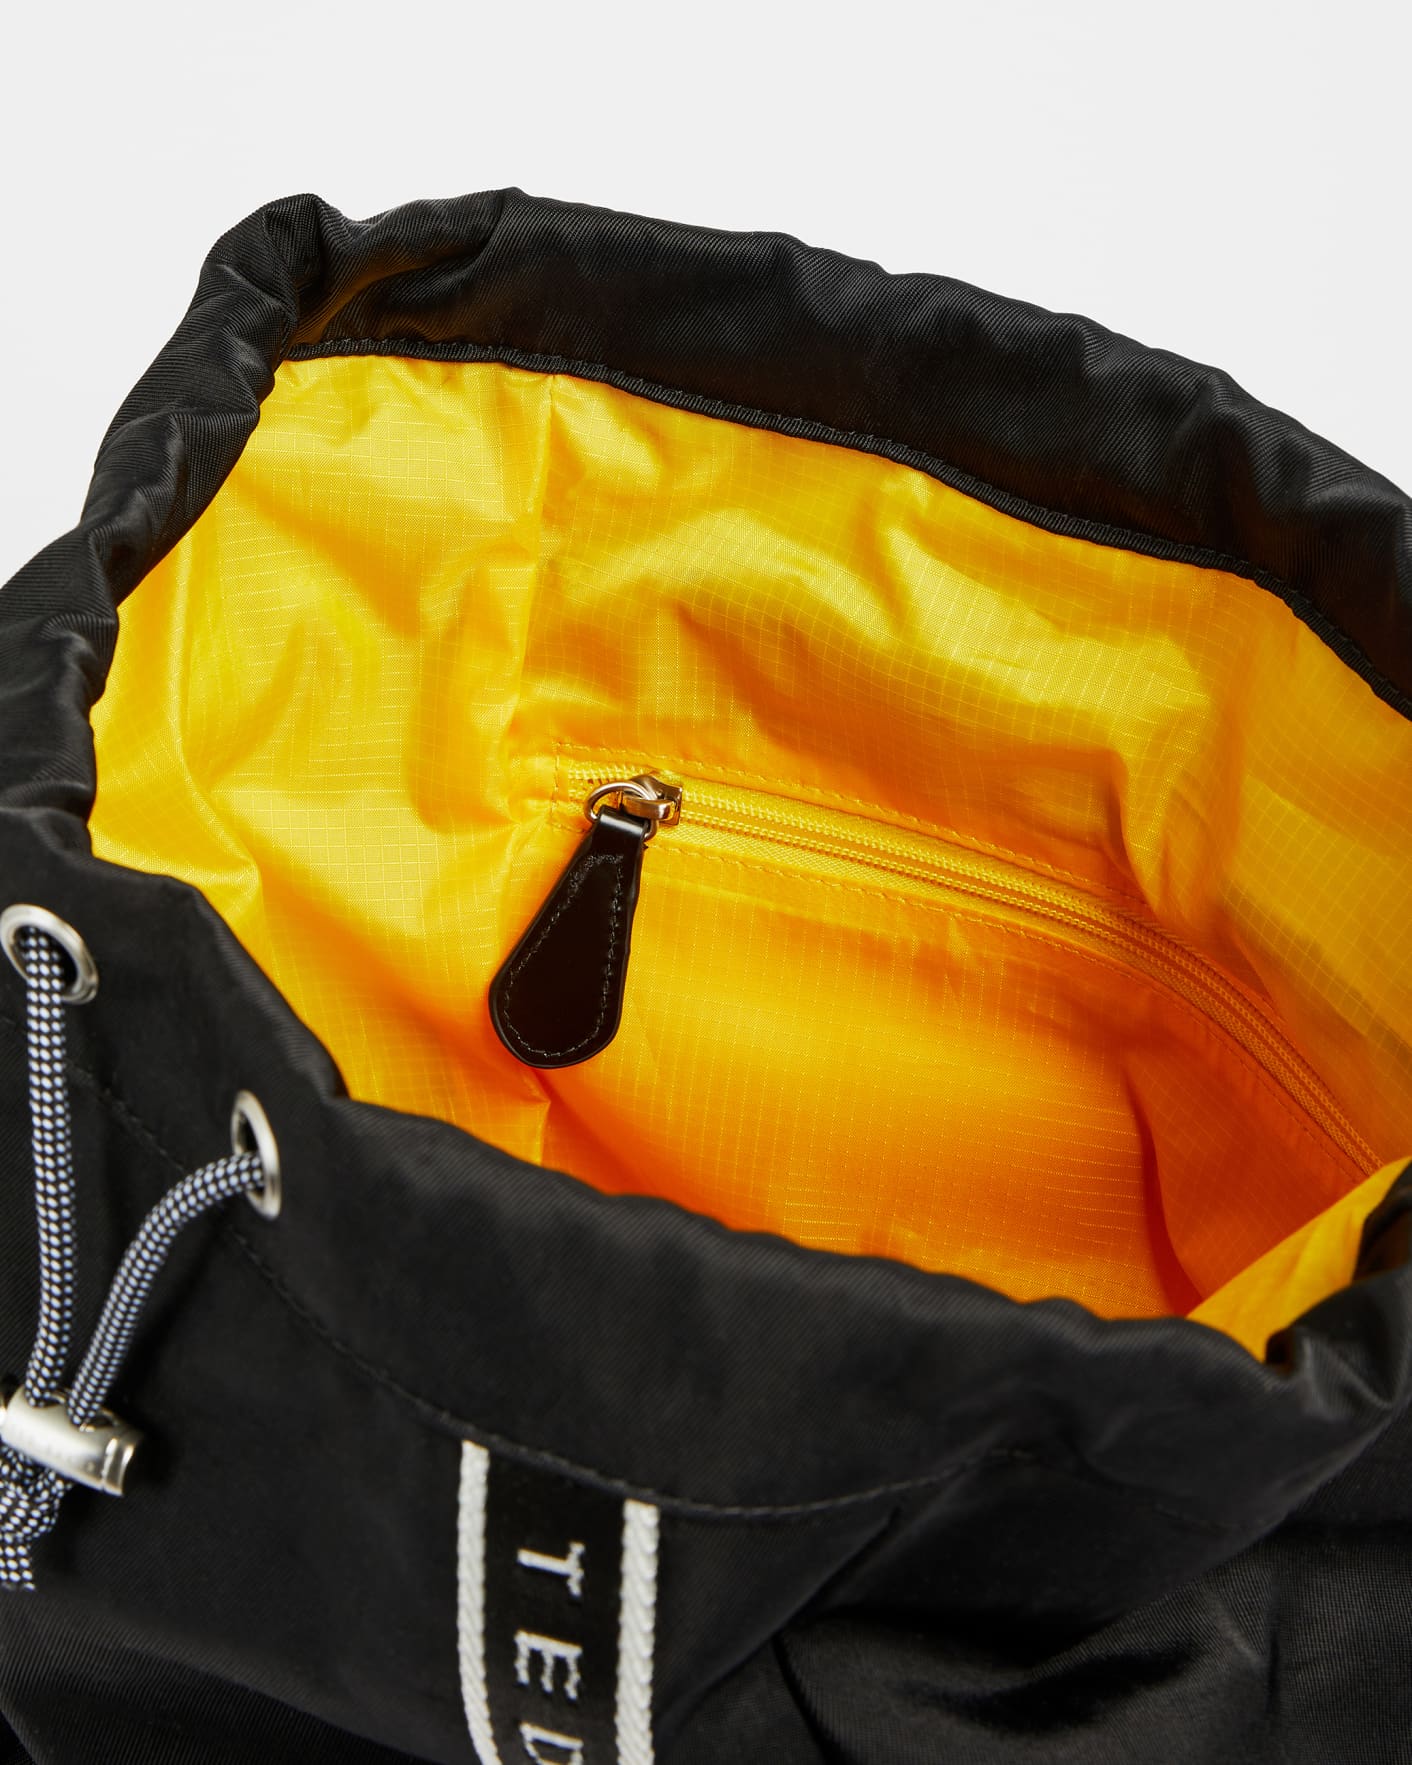 Black Branded Nylon Drawstring Backpack Ted Baker